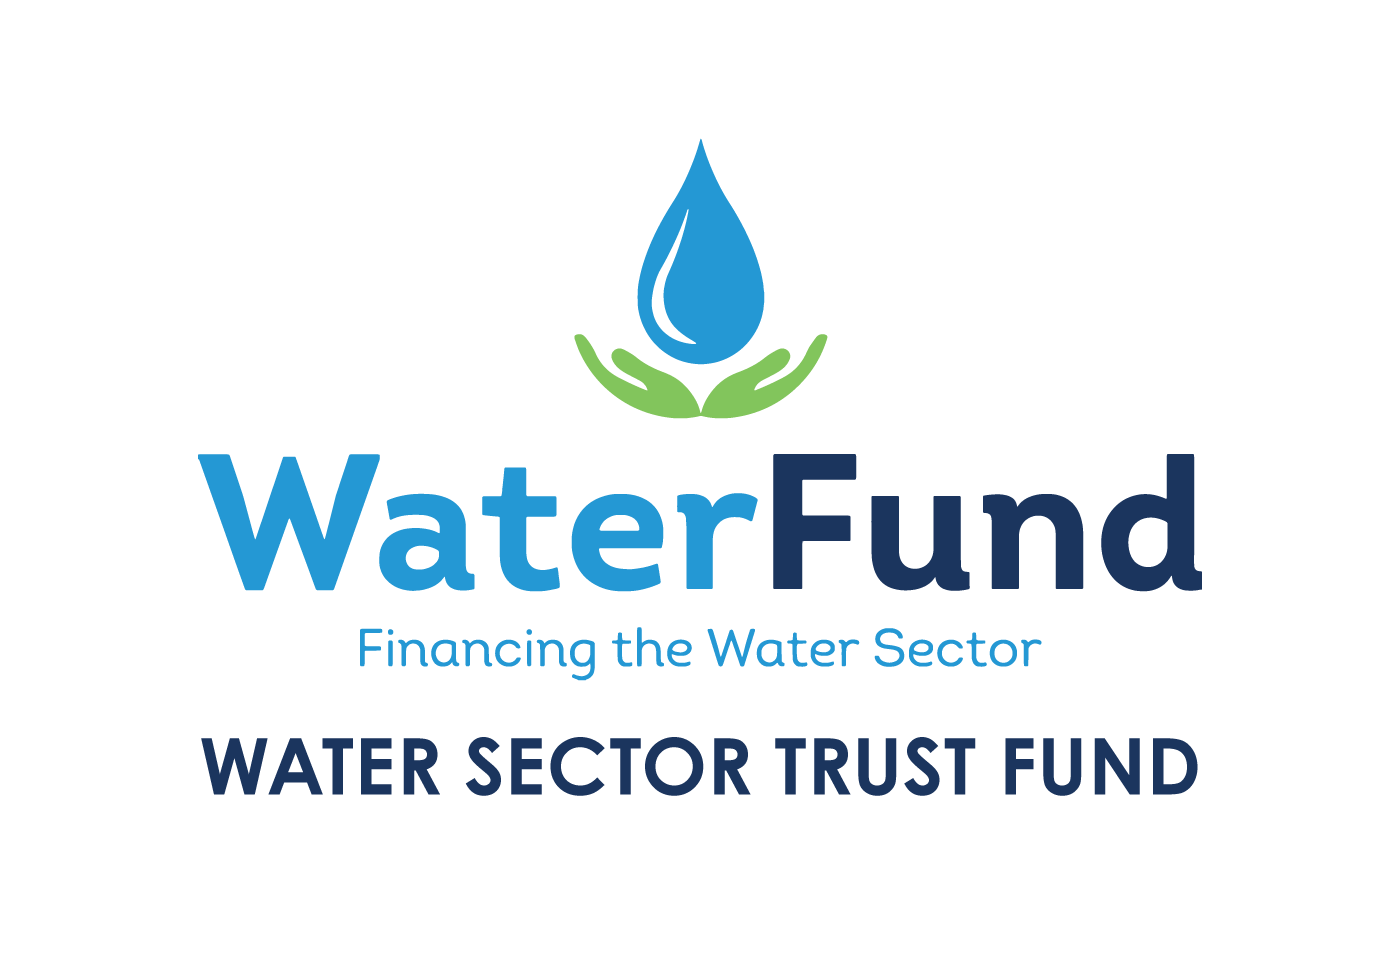 WaterFund logo